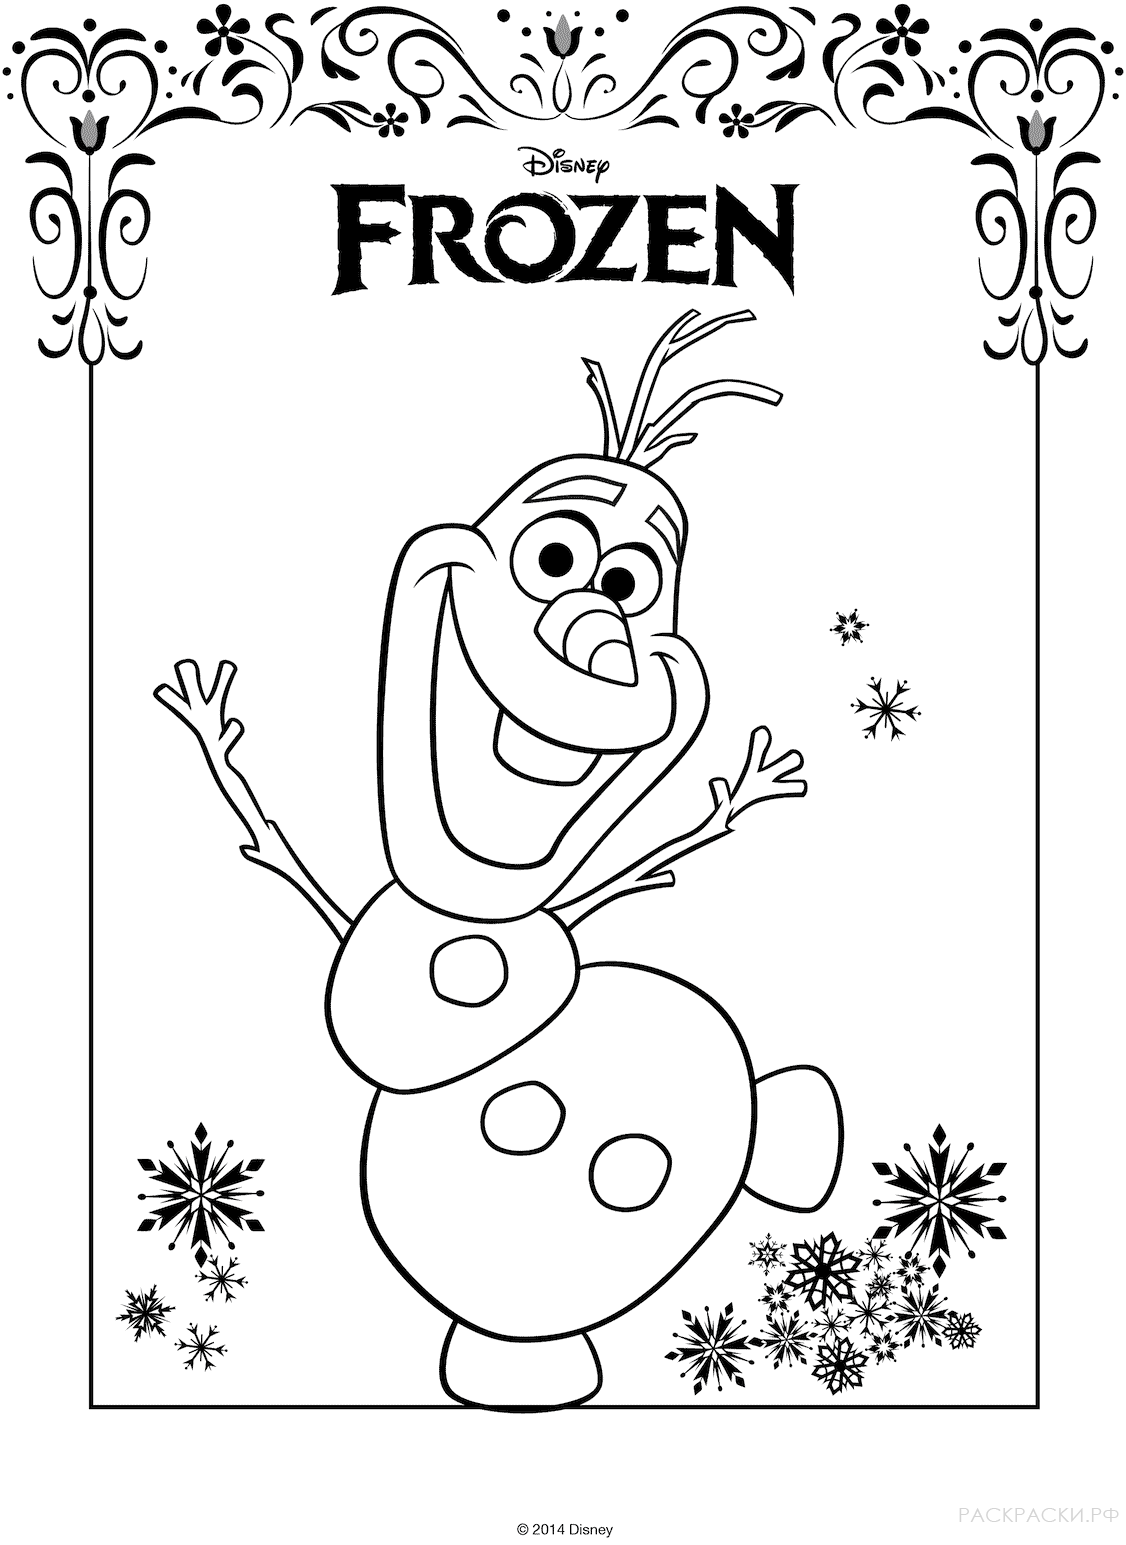 Раскраска Снеговик Олаф из мультфильма "Холодное сердце"